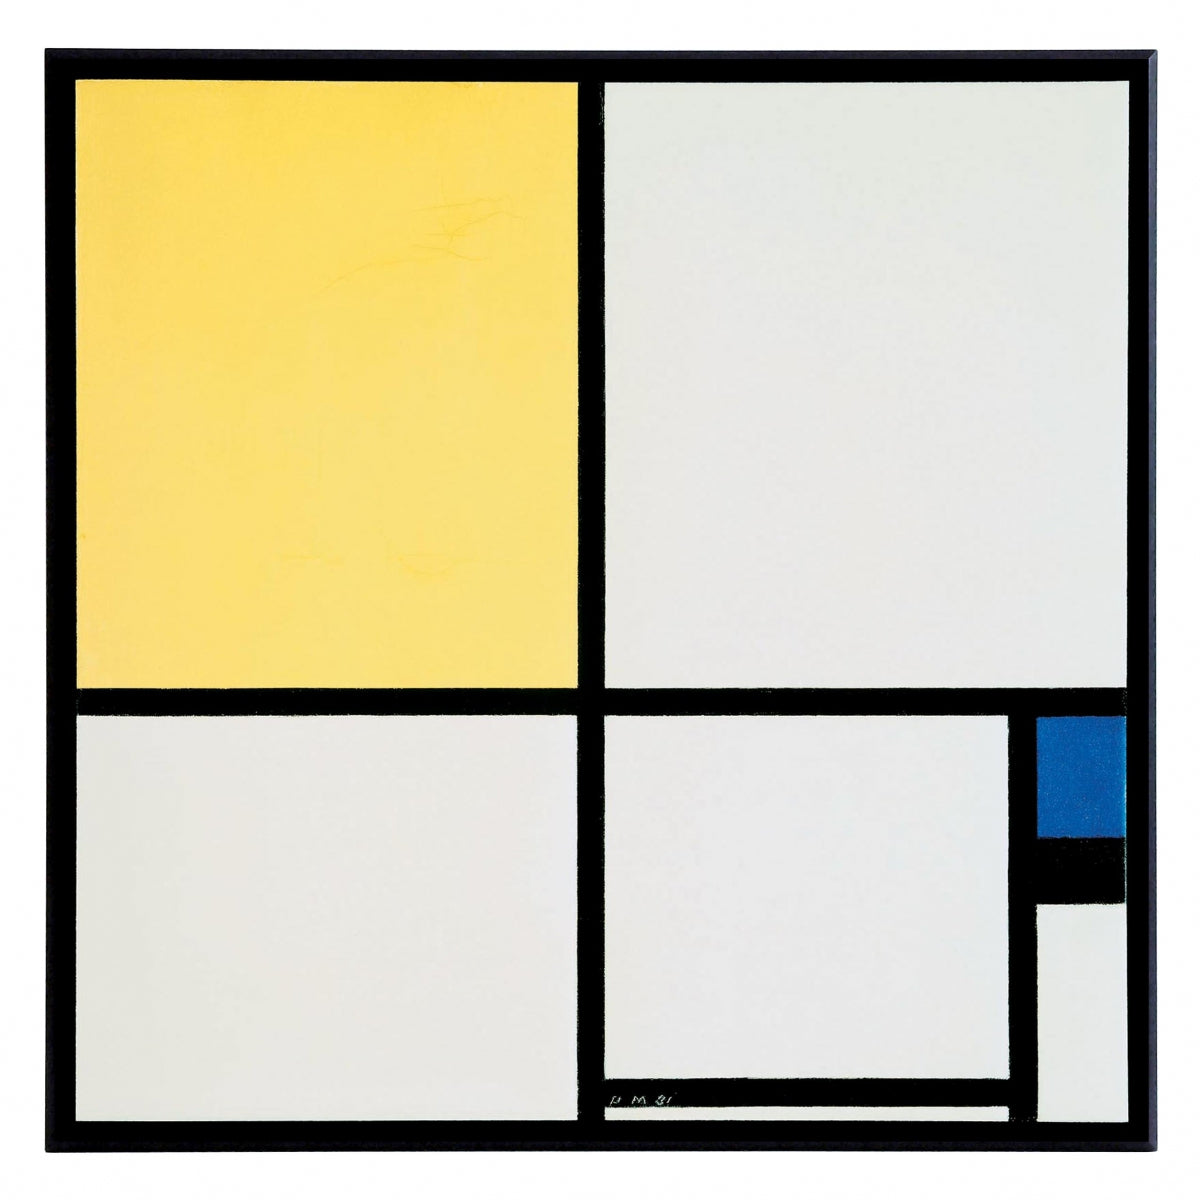 Obraz - Mondrian - kolorowa kompozycja - reprodukcja na płycie 1MON2121 71x71 cm. - Obrazy Reprodukcje Ramy | ergopaul.pl